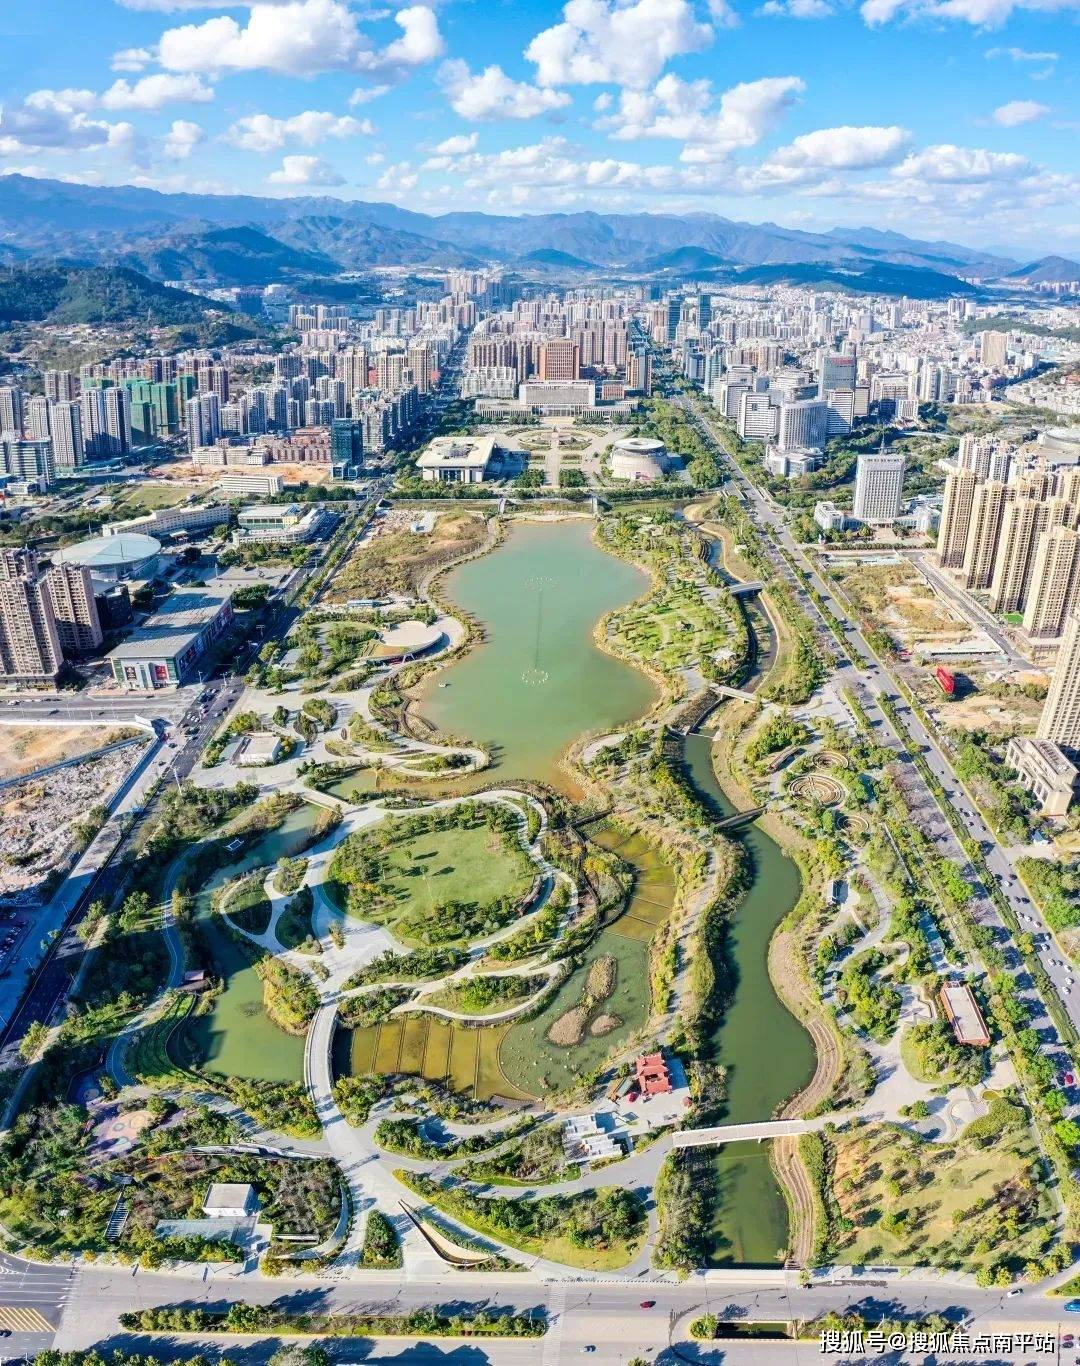 龙津湖公园实景图位居城市中芯地段,价值不言而喻,后续第四代住宅